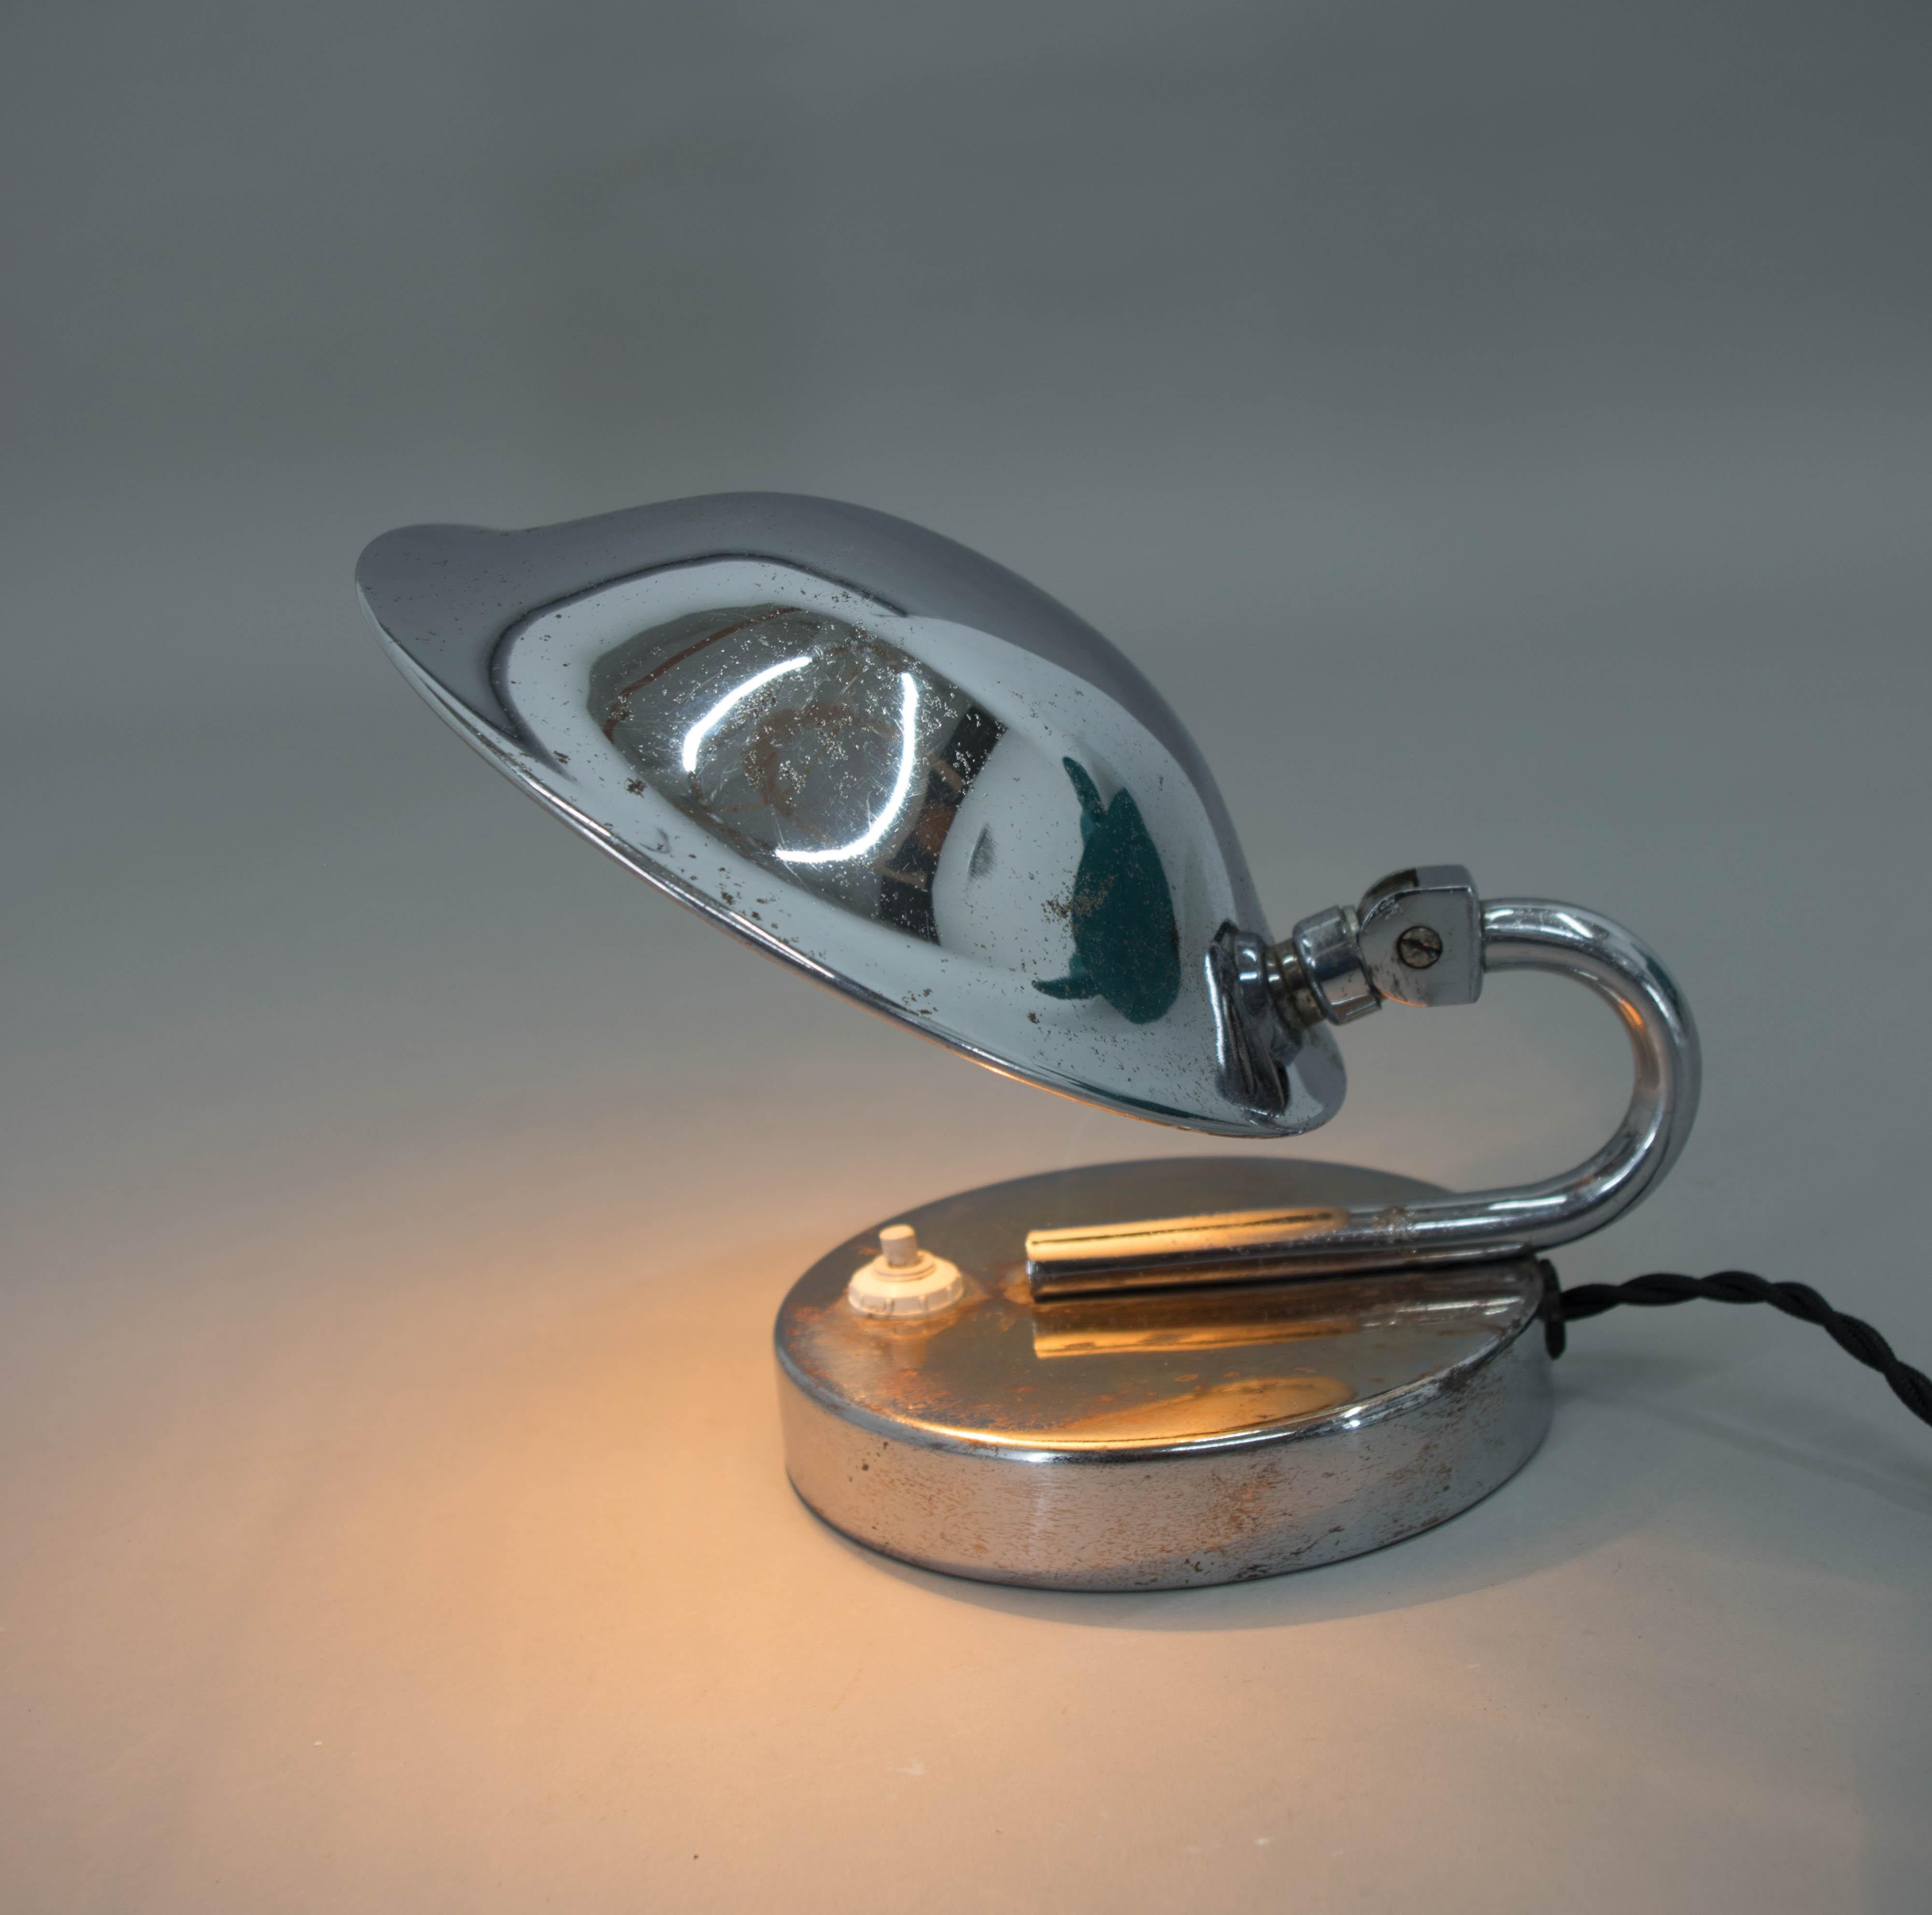 Lampe de table ou de chevet fonctionnaliste/Bauhaus fabriquée par Napako en Tchécoslovaquie dans les années 1930. Abat-jour réglable.
Nettoyé, recâblé : 1x25W, E25-E27 ampoules
Adaptateur pour prise américaine inclus